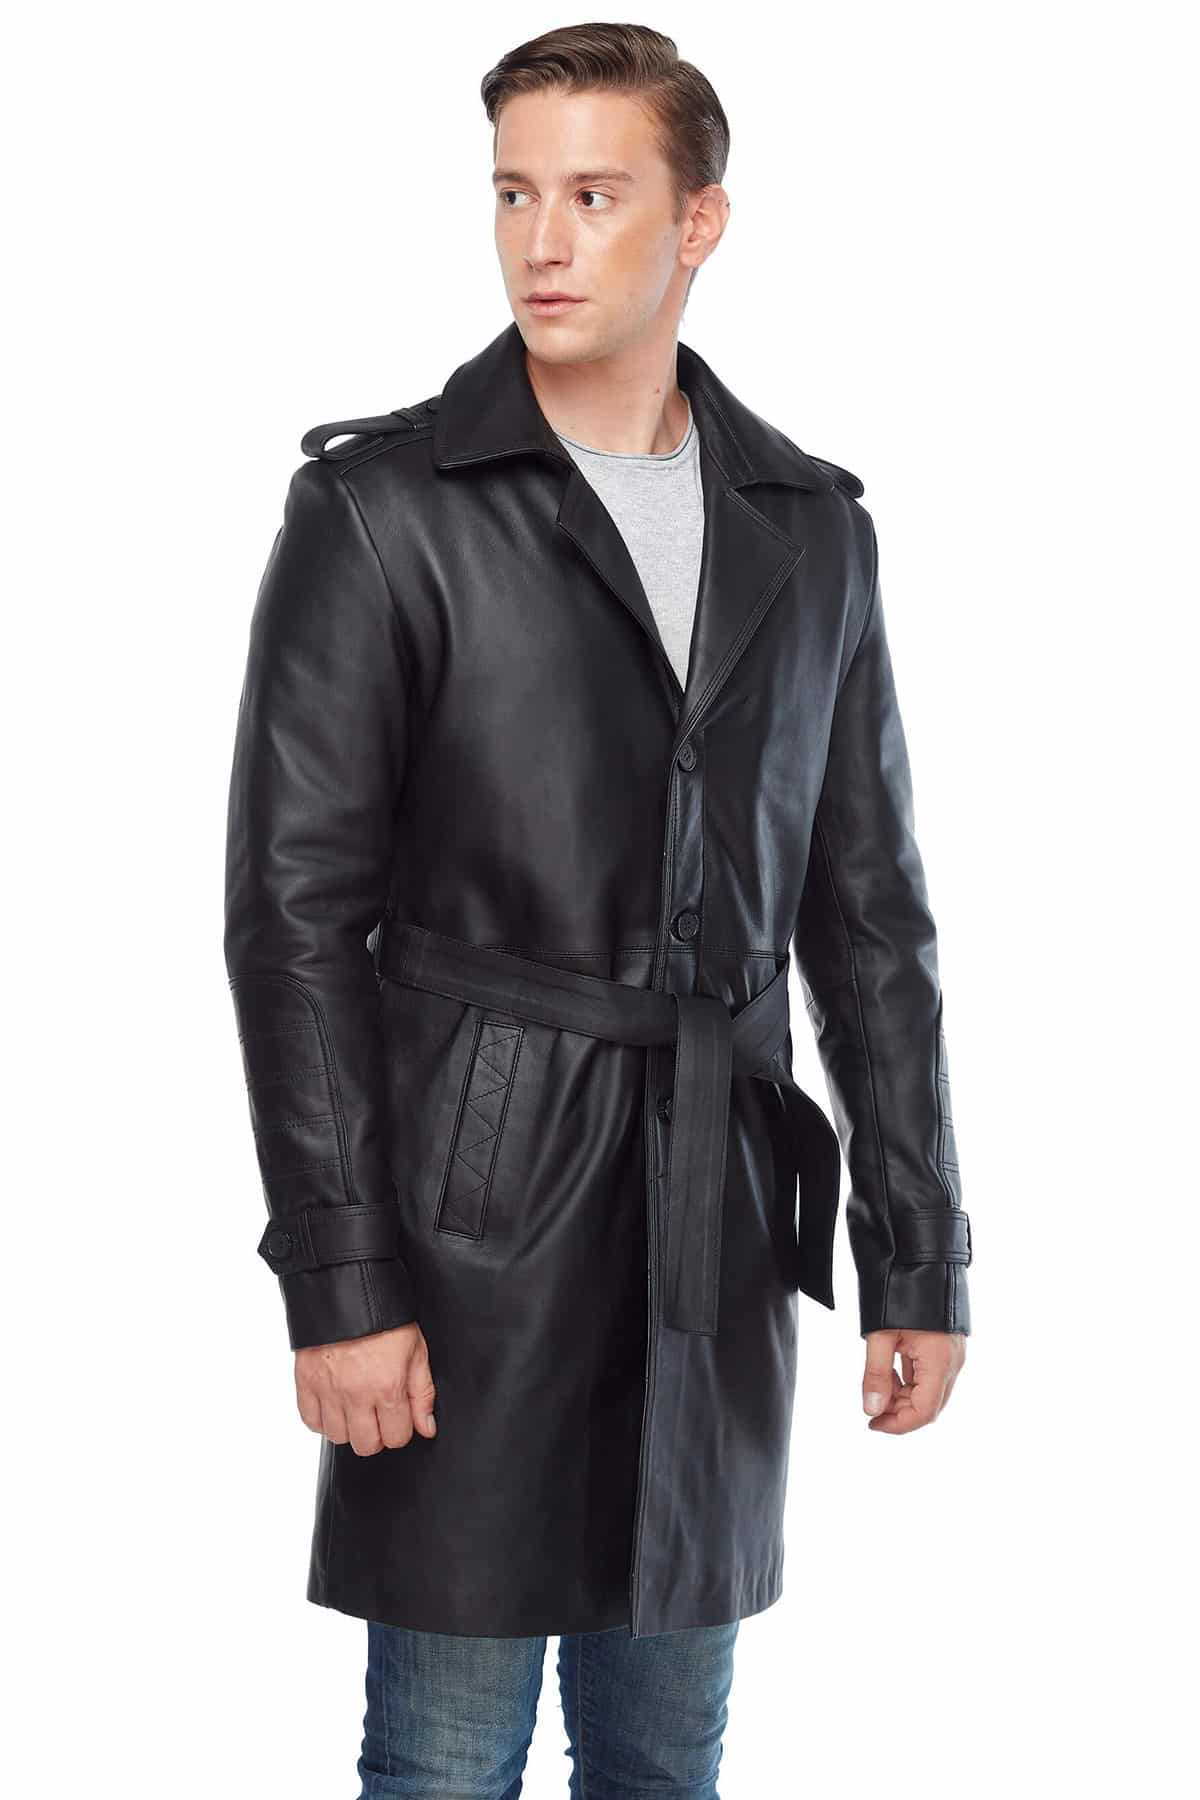 Daniel Genuine Leather Men’s Topcoat Black2